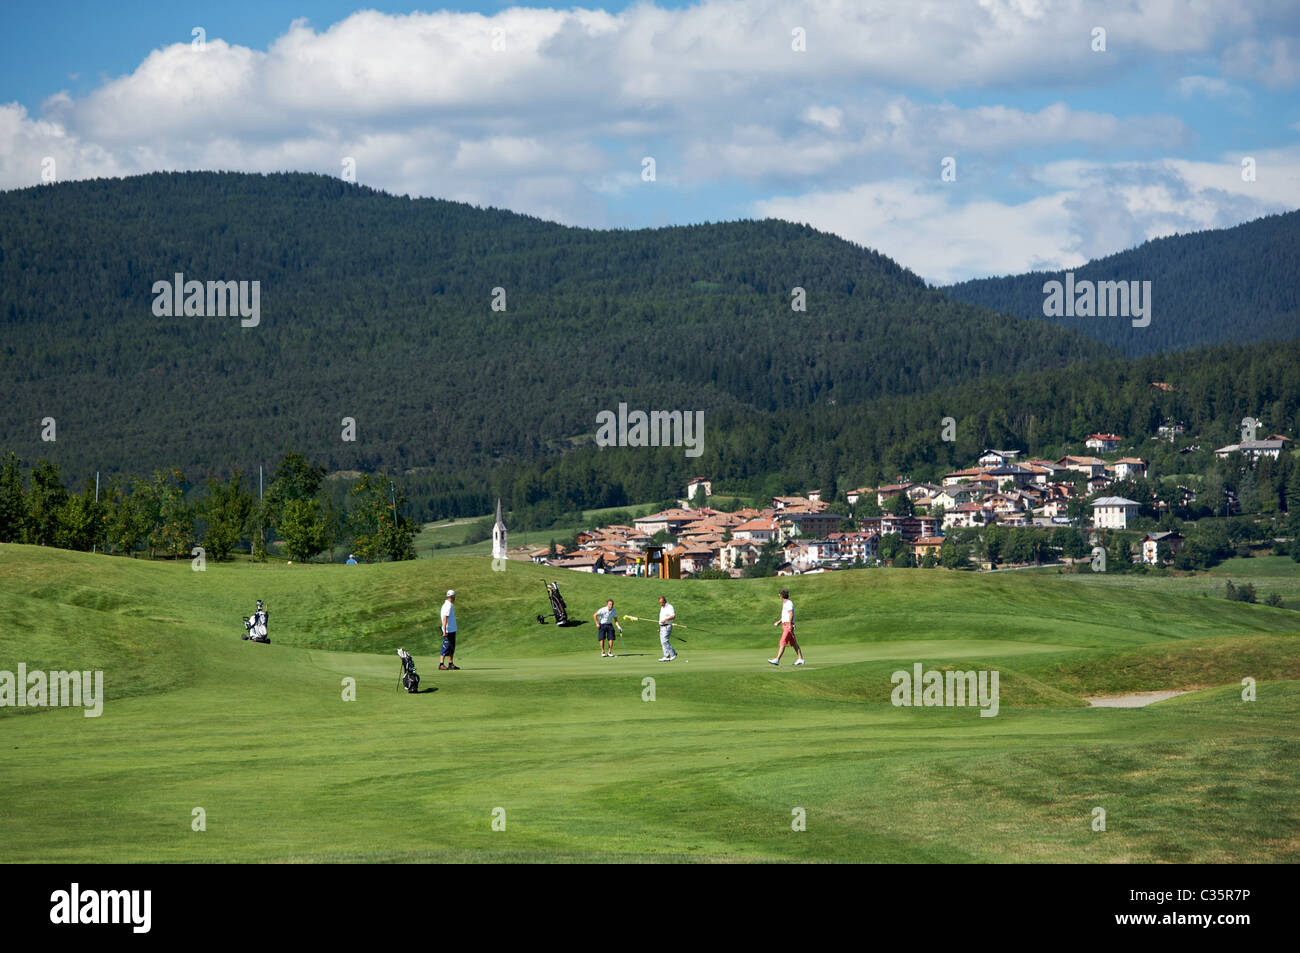 Golf course, Dolomiti Golf Club, Cavareno, Sarnonico plateau, Non valley,  Trentino Alto Adige, Italy, Europe Stock Photo - Alamy